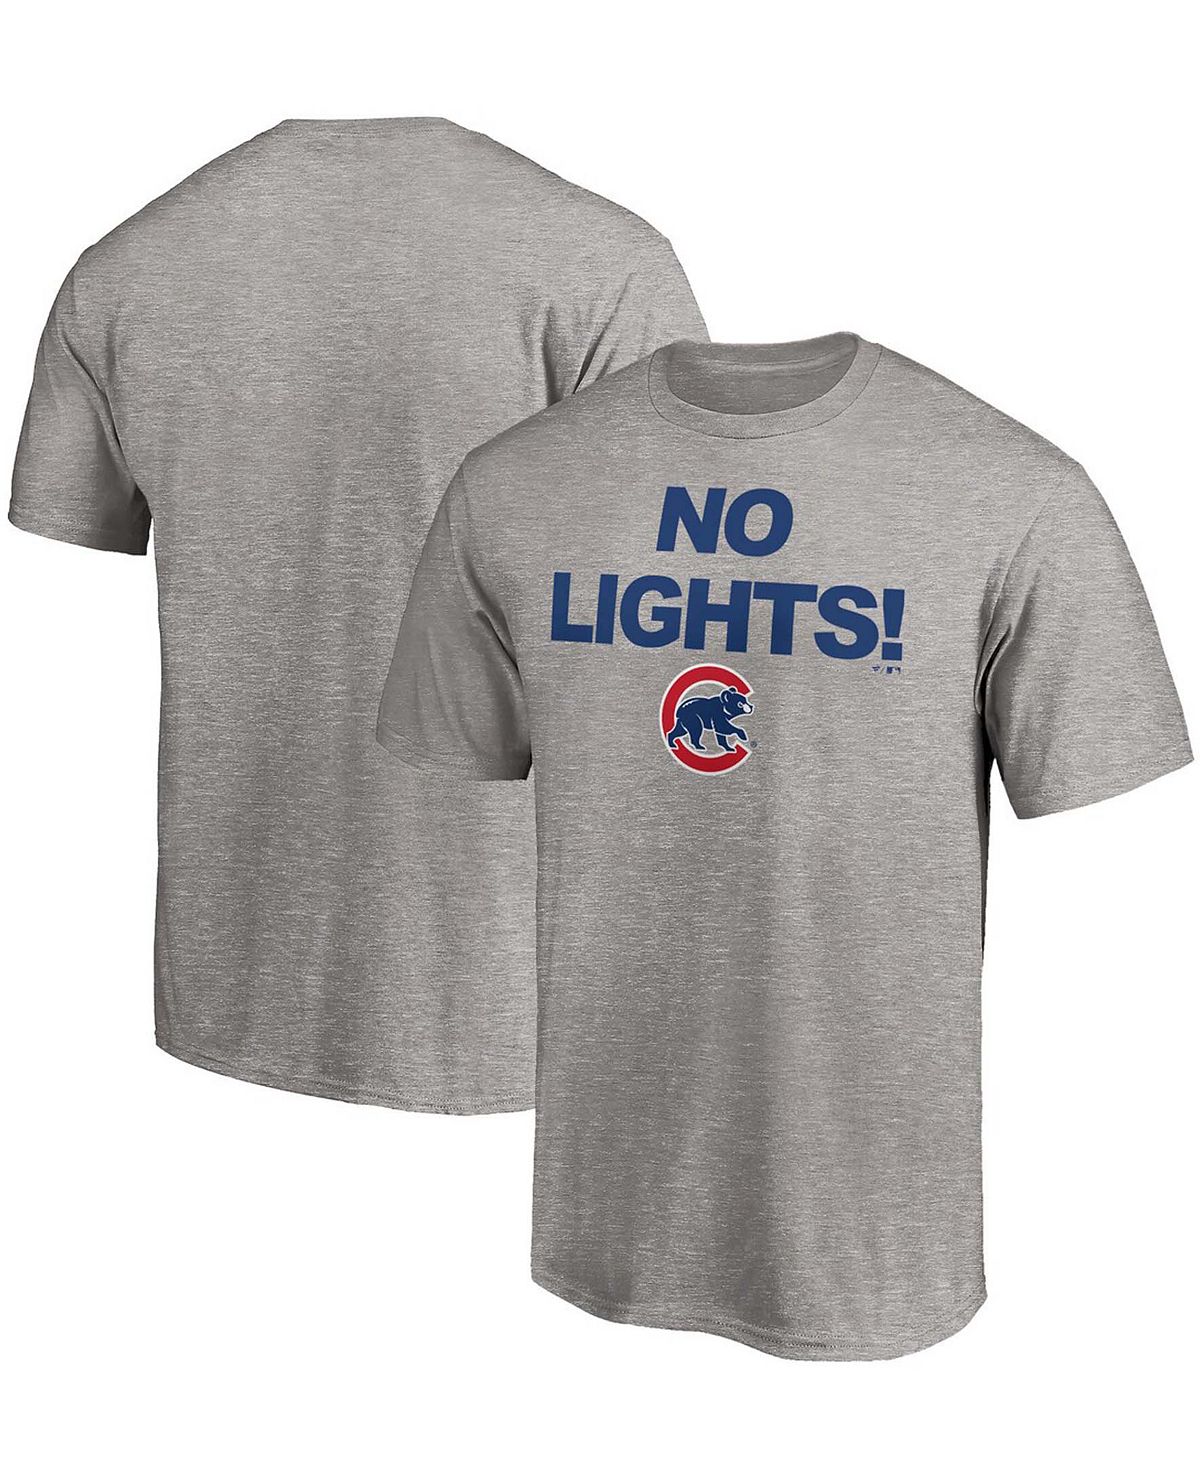 Мужская футболка chicago cubs hometown с меланжевым покрытием серого цвета Fanatics, мульти chicago